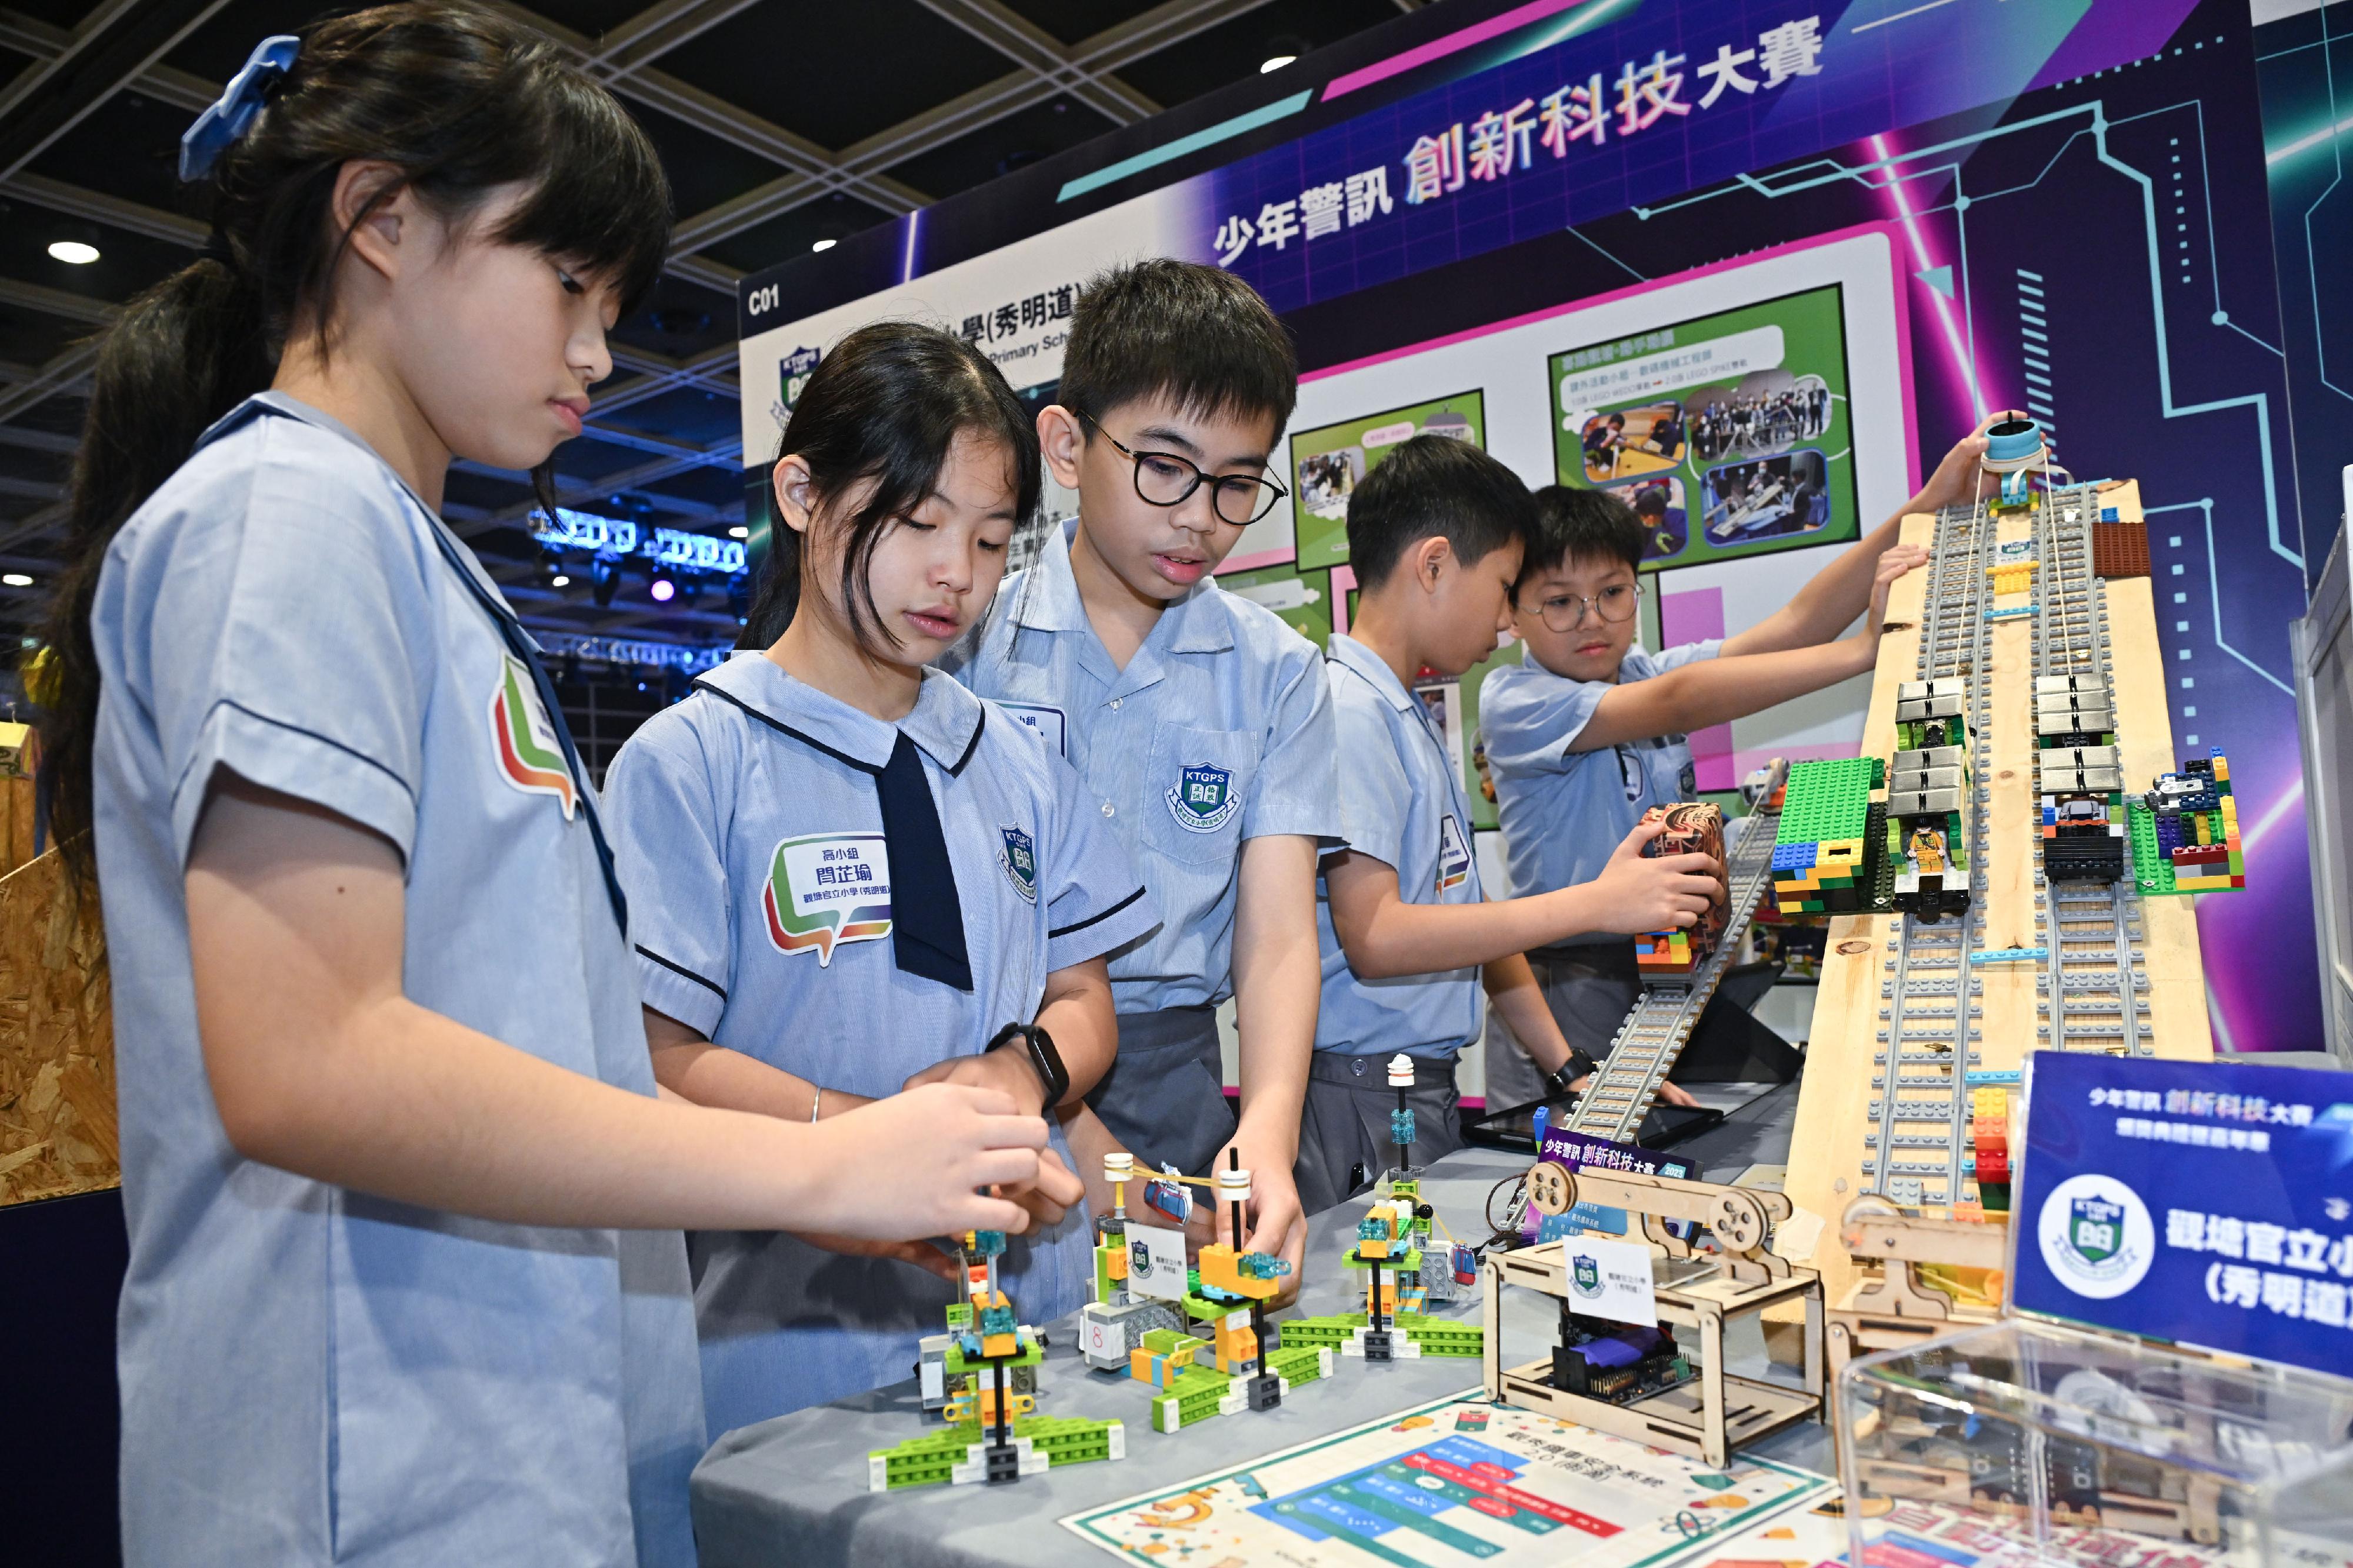 少年警讯主办的「少年警讯创新科技大赛 2023-24」今日（五月十一日）在香港会议展览中心举行颁奖典礼，同场亦举行创科嘉年华，得奖队伍于场内展示作品。